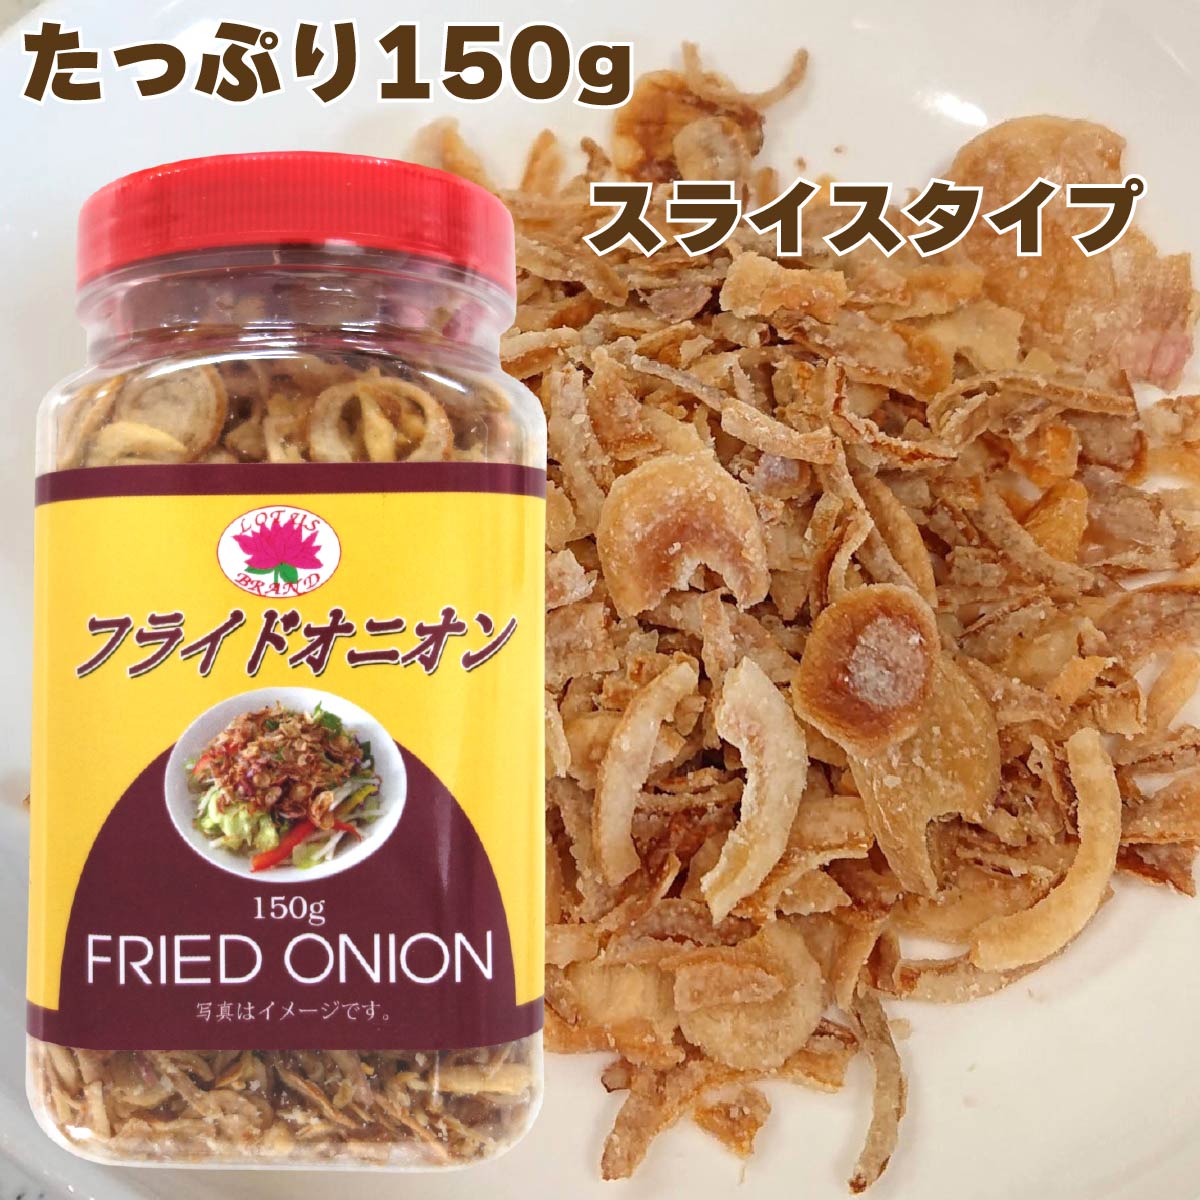 ロータスブランド フライドオニオン 150g (1個)  Fried Onion Slice サラダ カレー ラーメン スープ